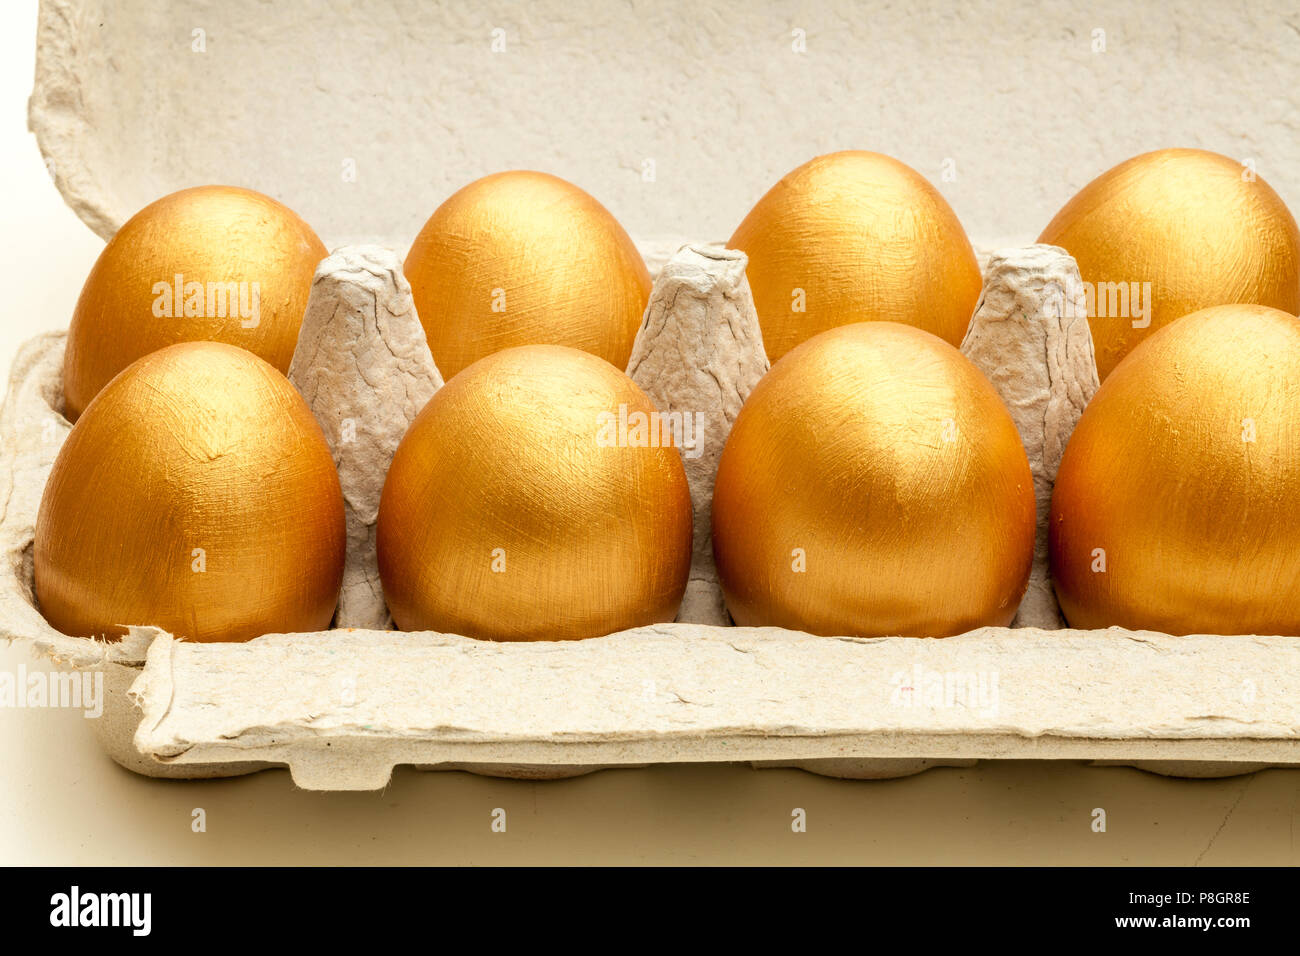 Dipinte a mano uova d'oro in una confezione di uova Foto Stock